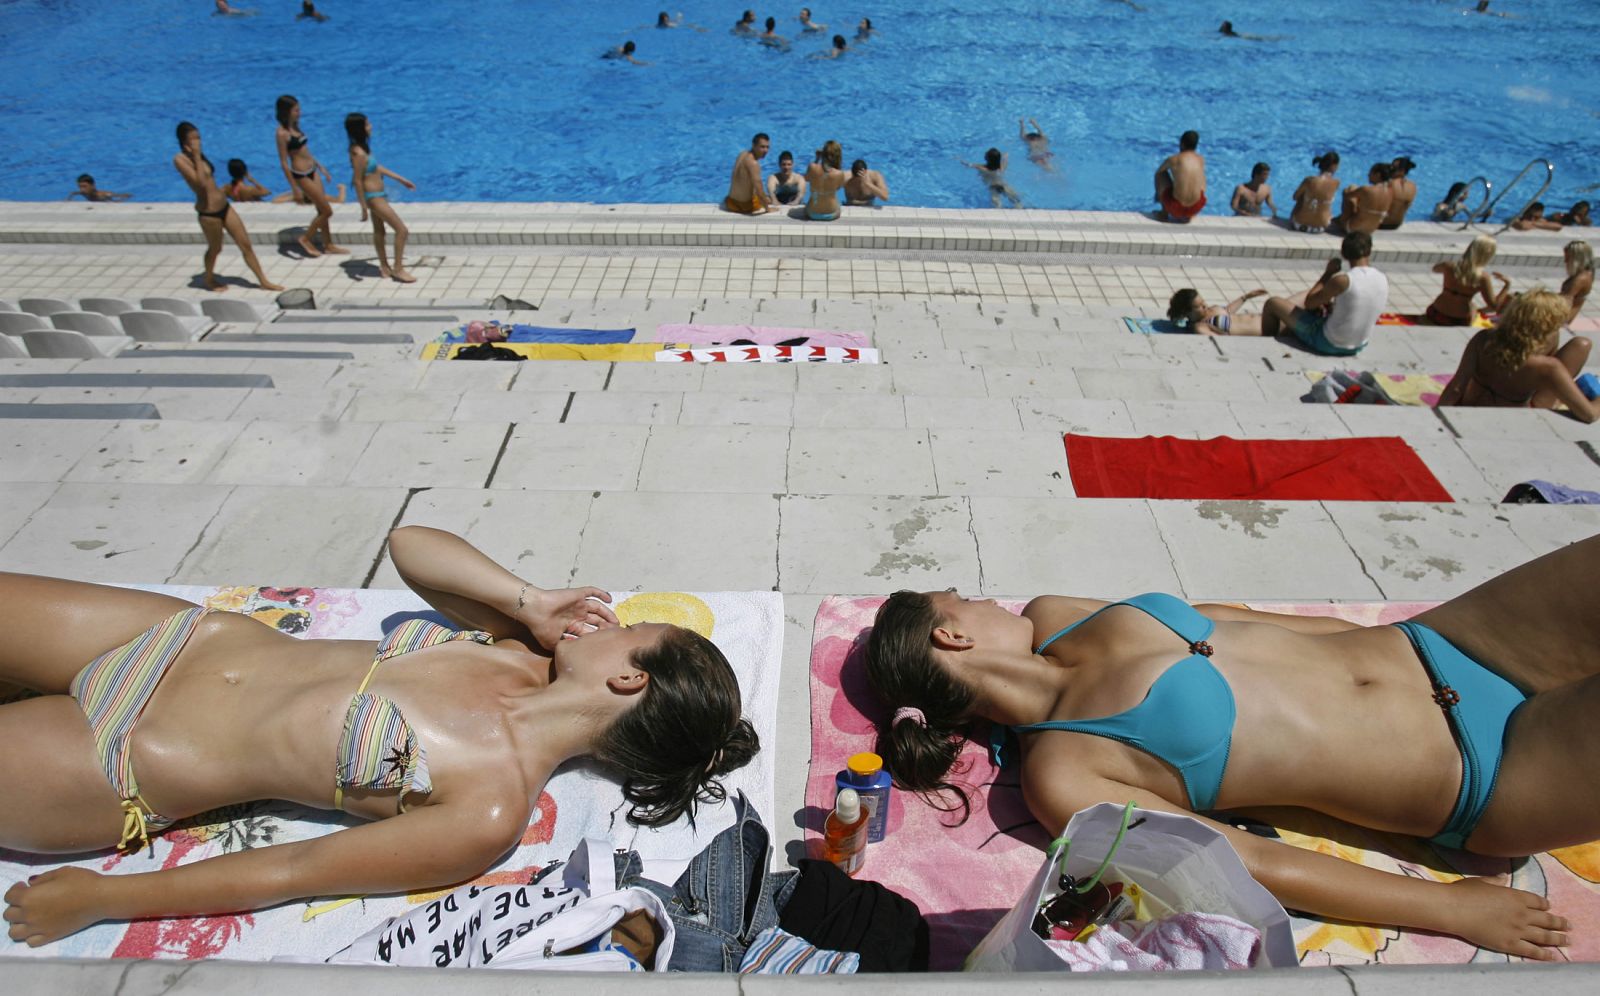 Unas jóvenes toman el sol tranquilamente en una piscina.